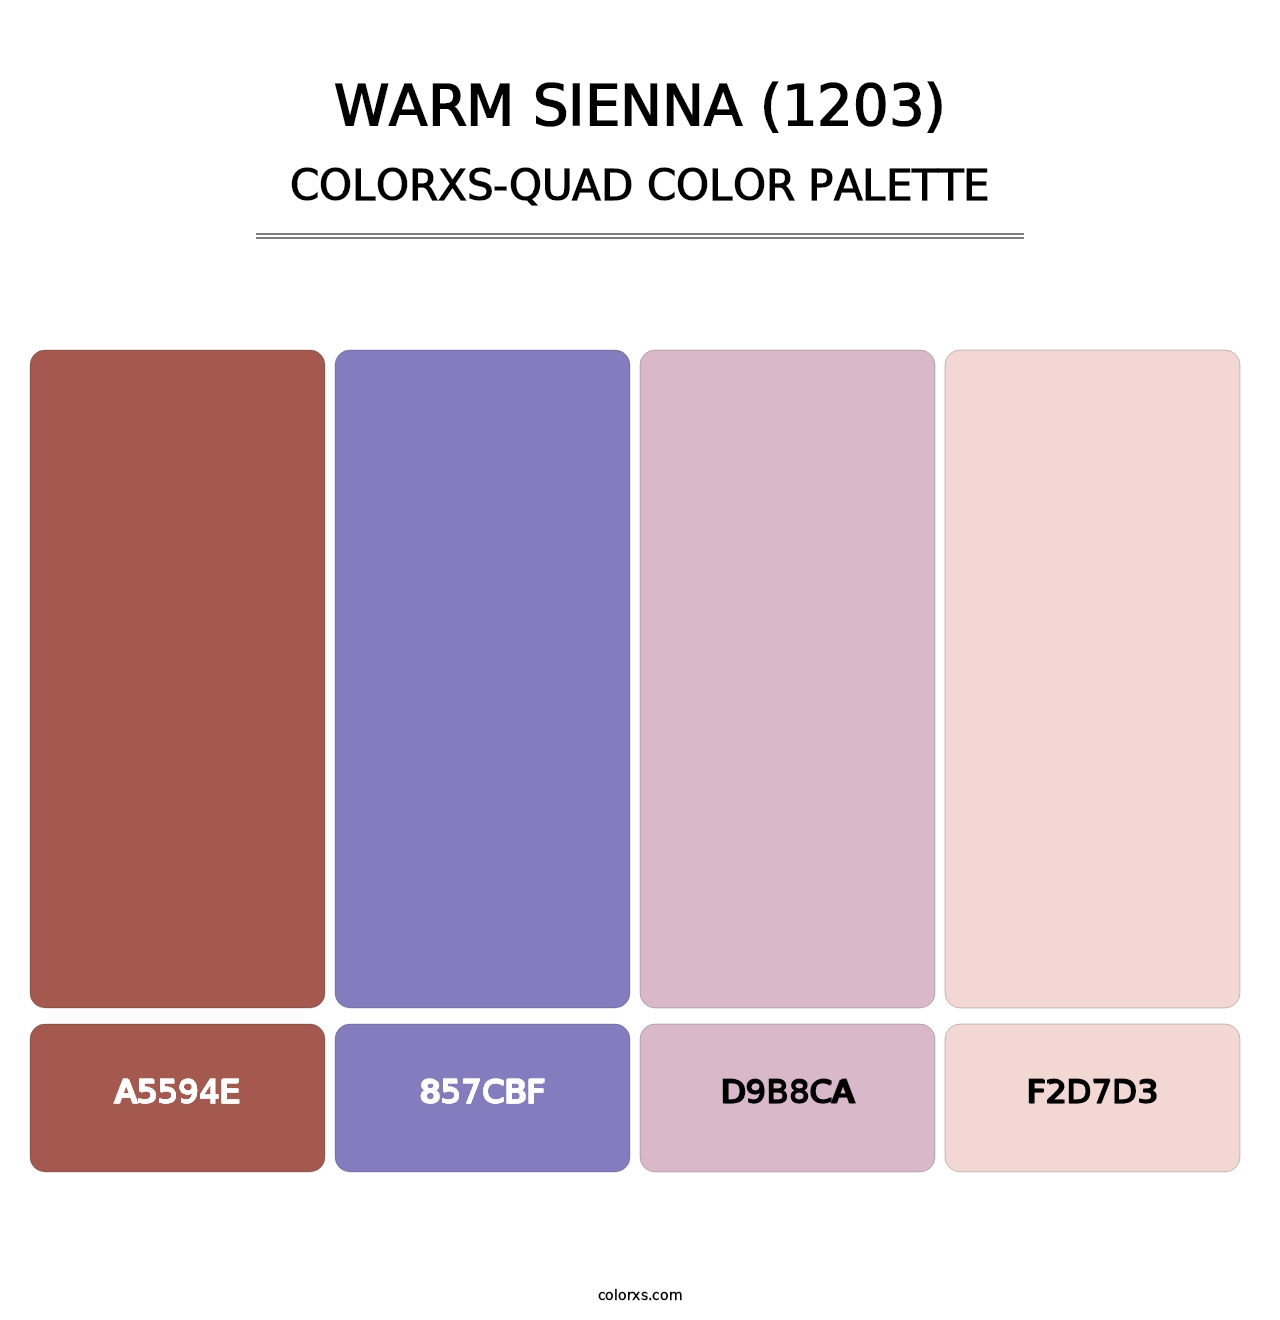 Warm Sienna (1203) - Colorxs Quad Palette